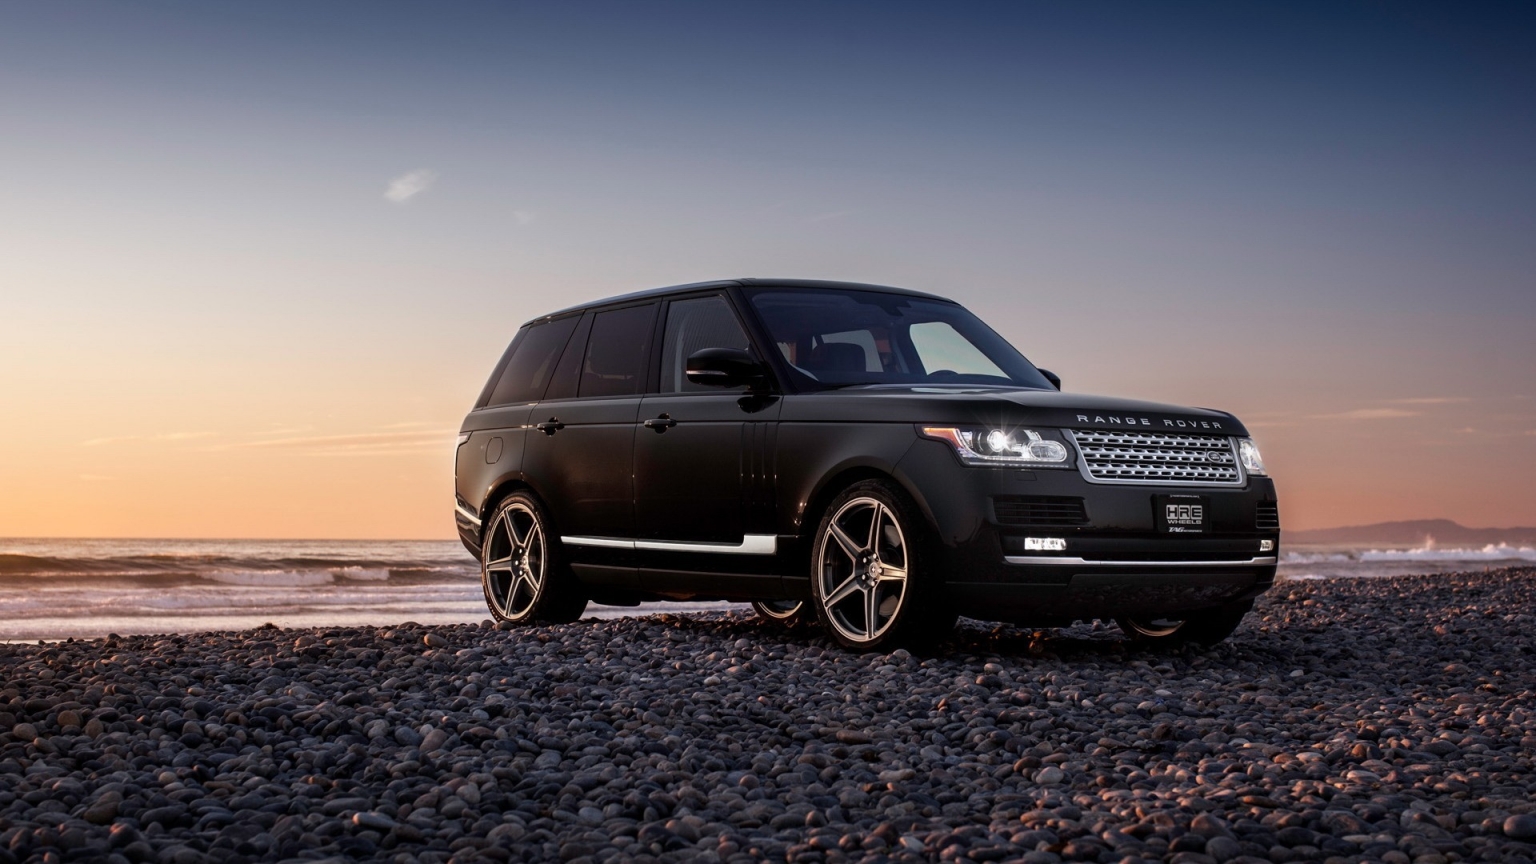 New Black Range Rover for 1536 x 864 HDTV resolution